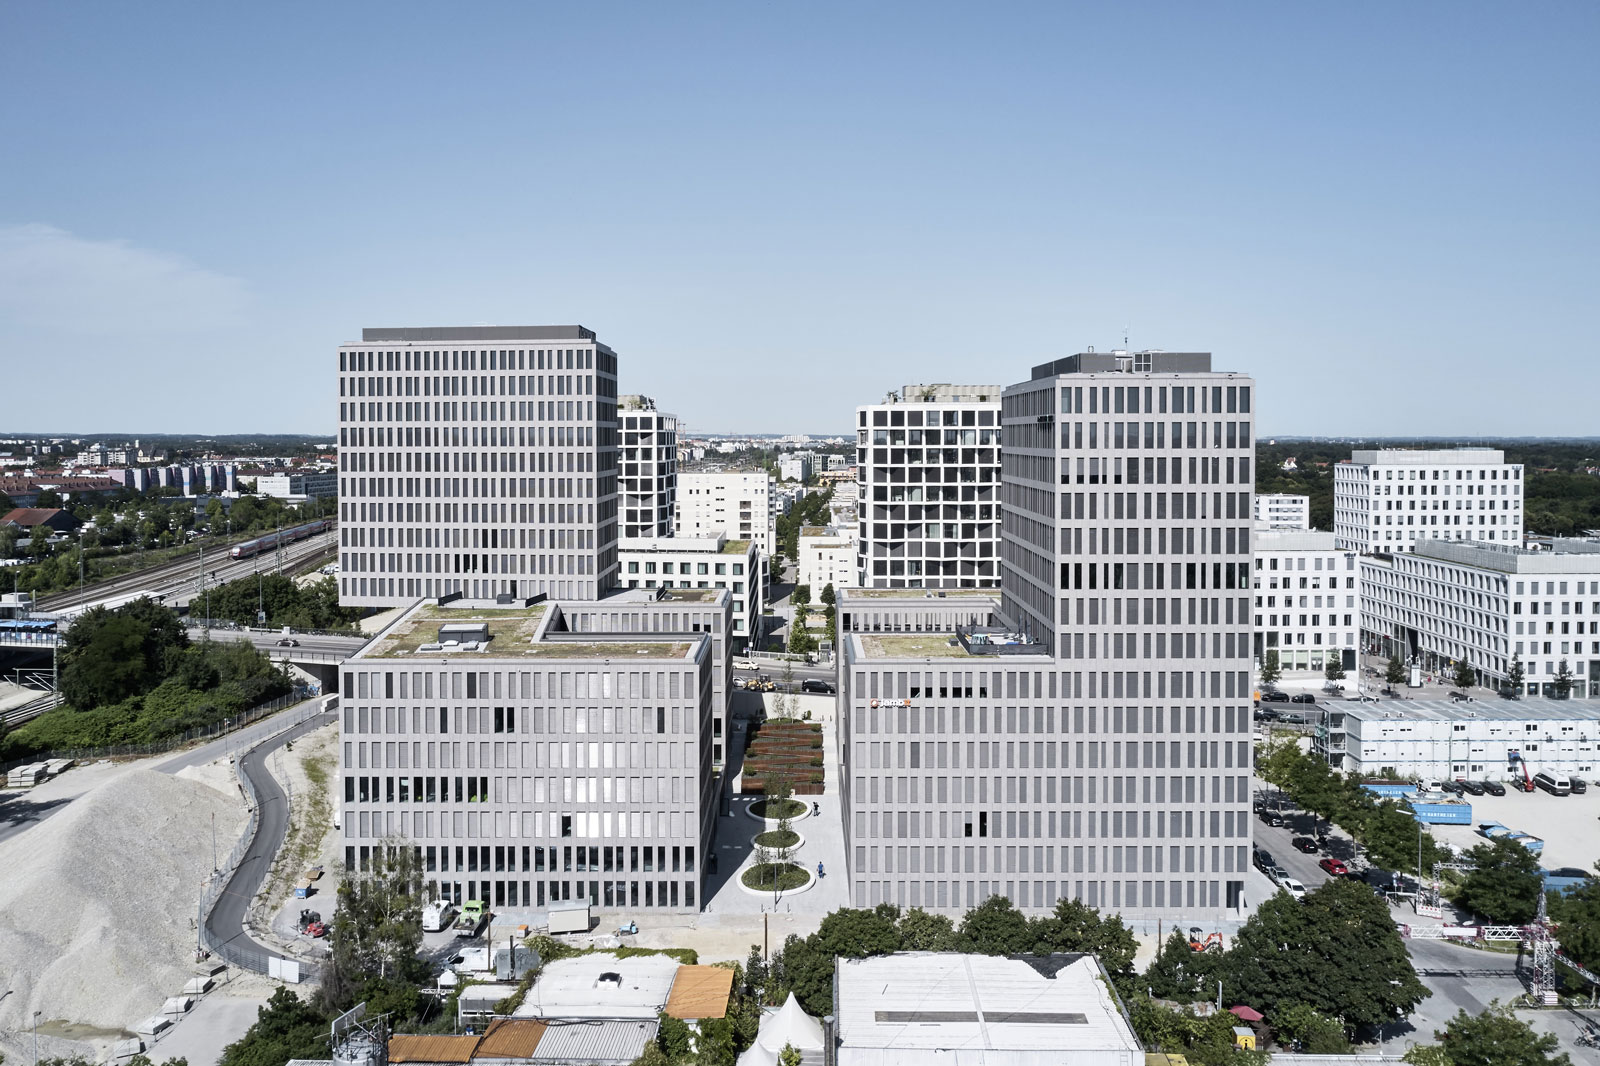 Fachadas WICONA con paneles Dekton en el edificio de oficinas Kap West de Múnich, LEED Gold por sus criterios sostenibles